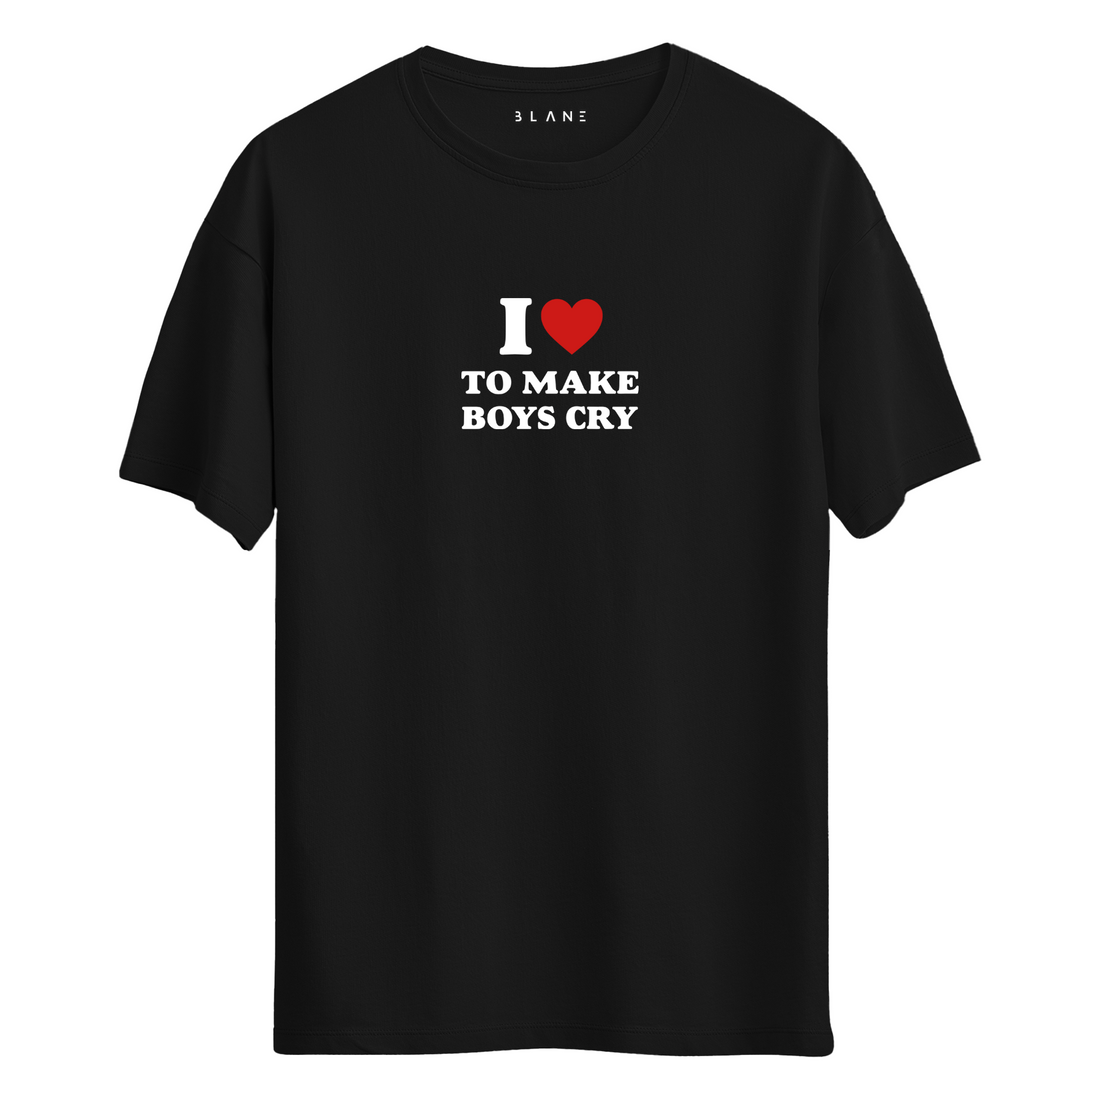 I Love - T-Shirt